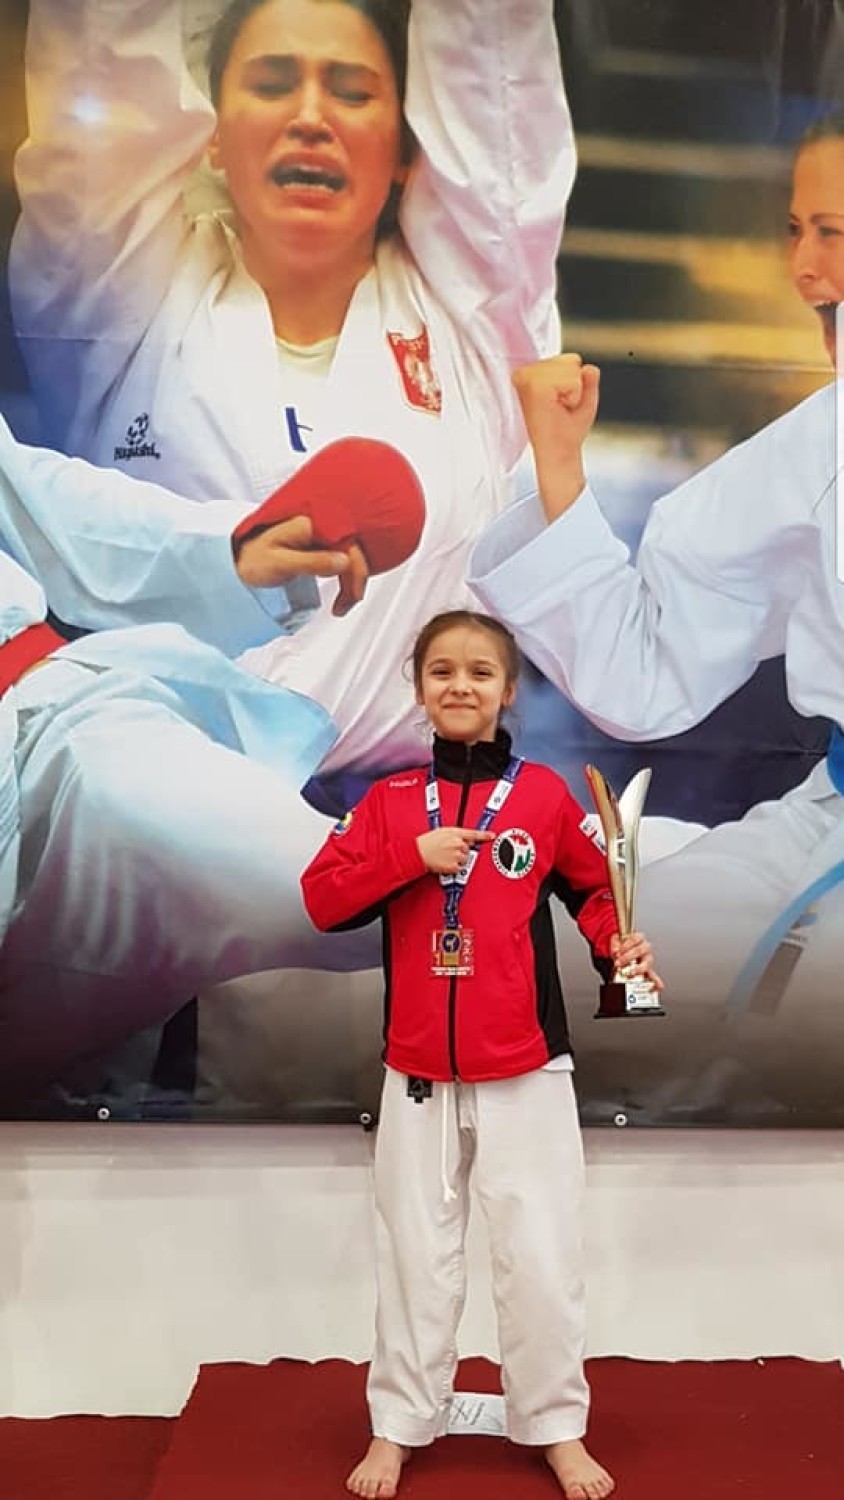 Reprezentanci Pleszewskiego Klubu Karate zdobyli aż 9 medali podczas Pucharu Świata Harasuto Cup w Łodzi